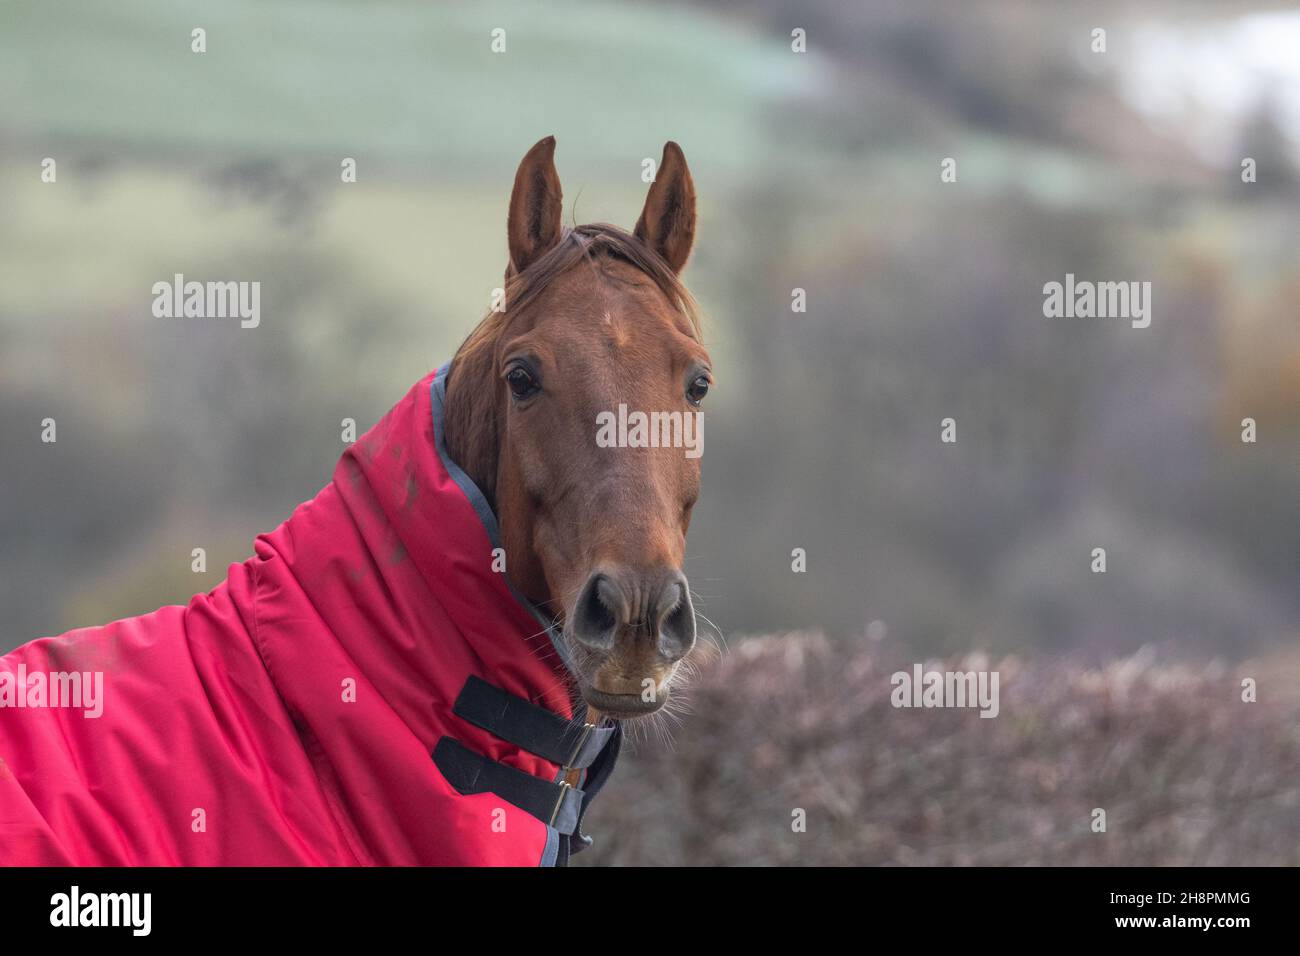 Ein Vollblut-Pferd aus nächster Nähe. Das Pferd trägt eine rote Jacke, um ihn vor dem kalten Wetter zu schützen. Rechts befindet sich ein negativer Raum. Stockfoto